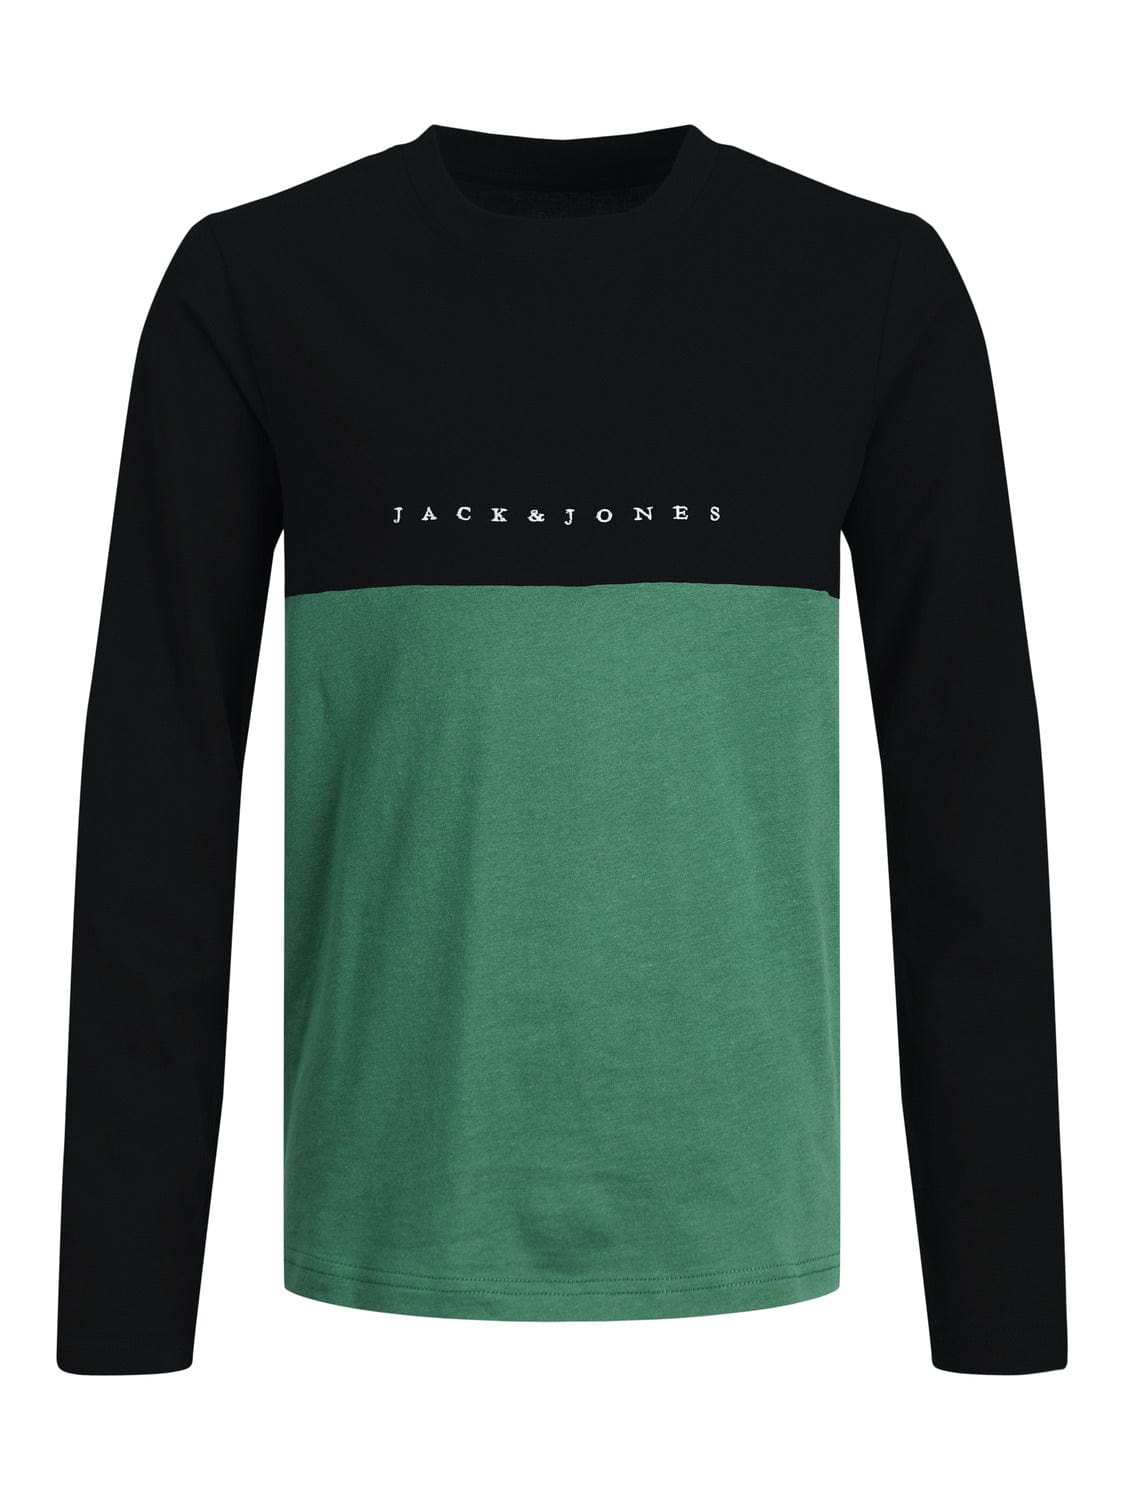 Camiseta de manga larga con leterring delantero bicolor negra y verde - JORCOPENHAGEN